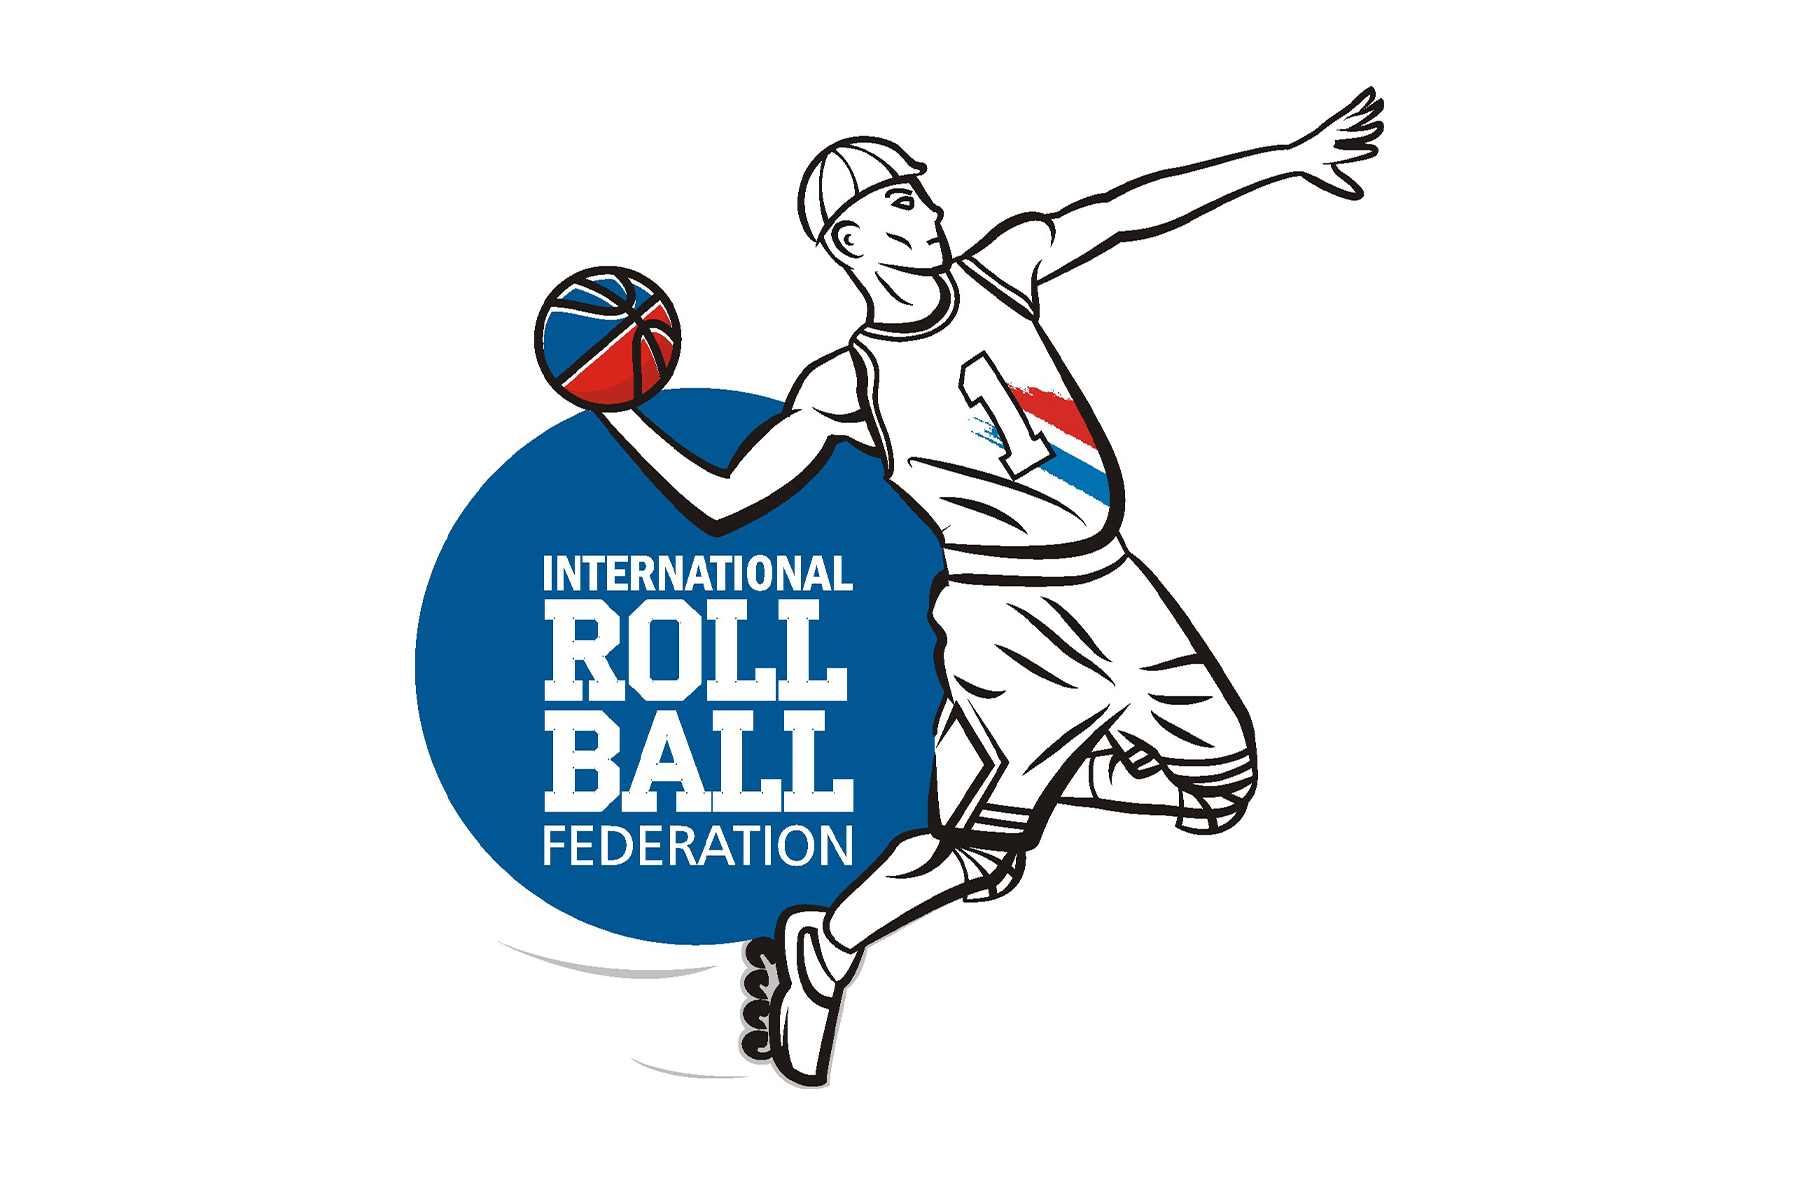 International Roll Ball Federation